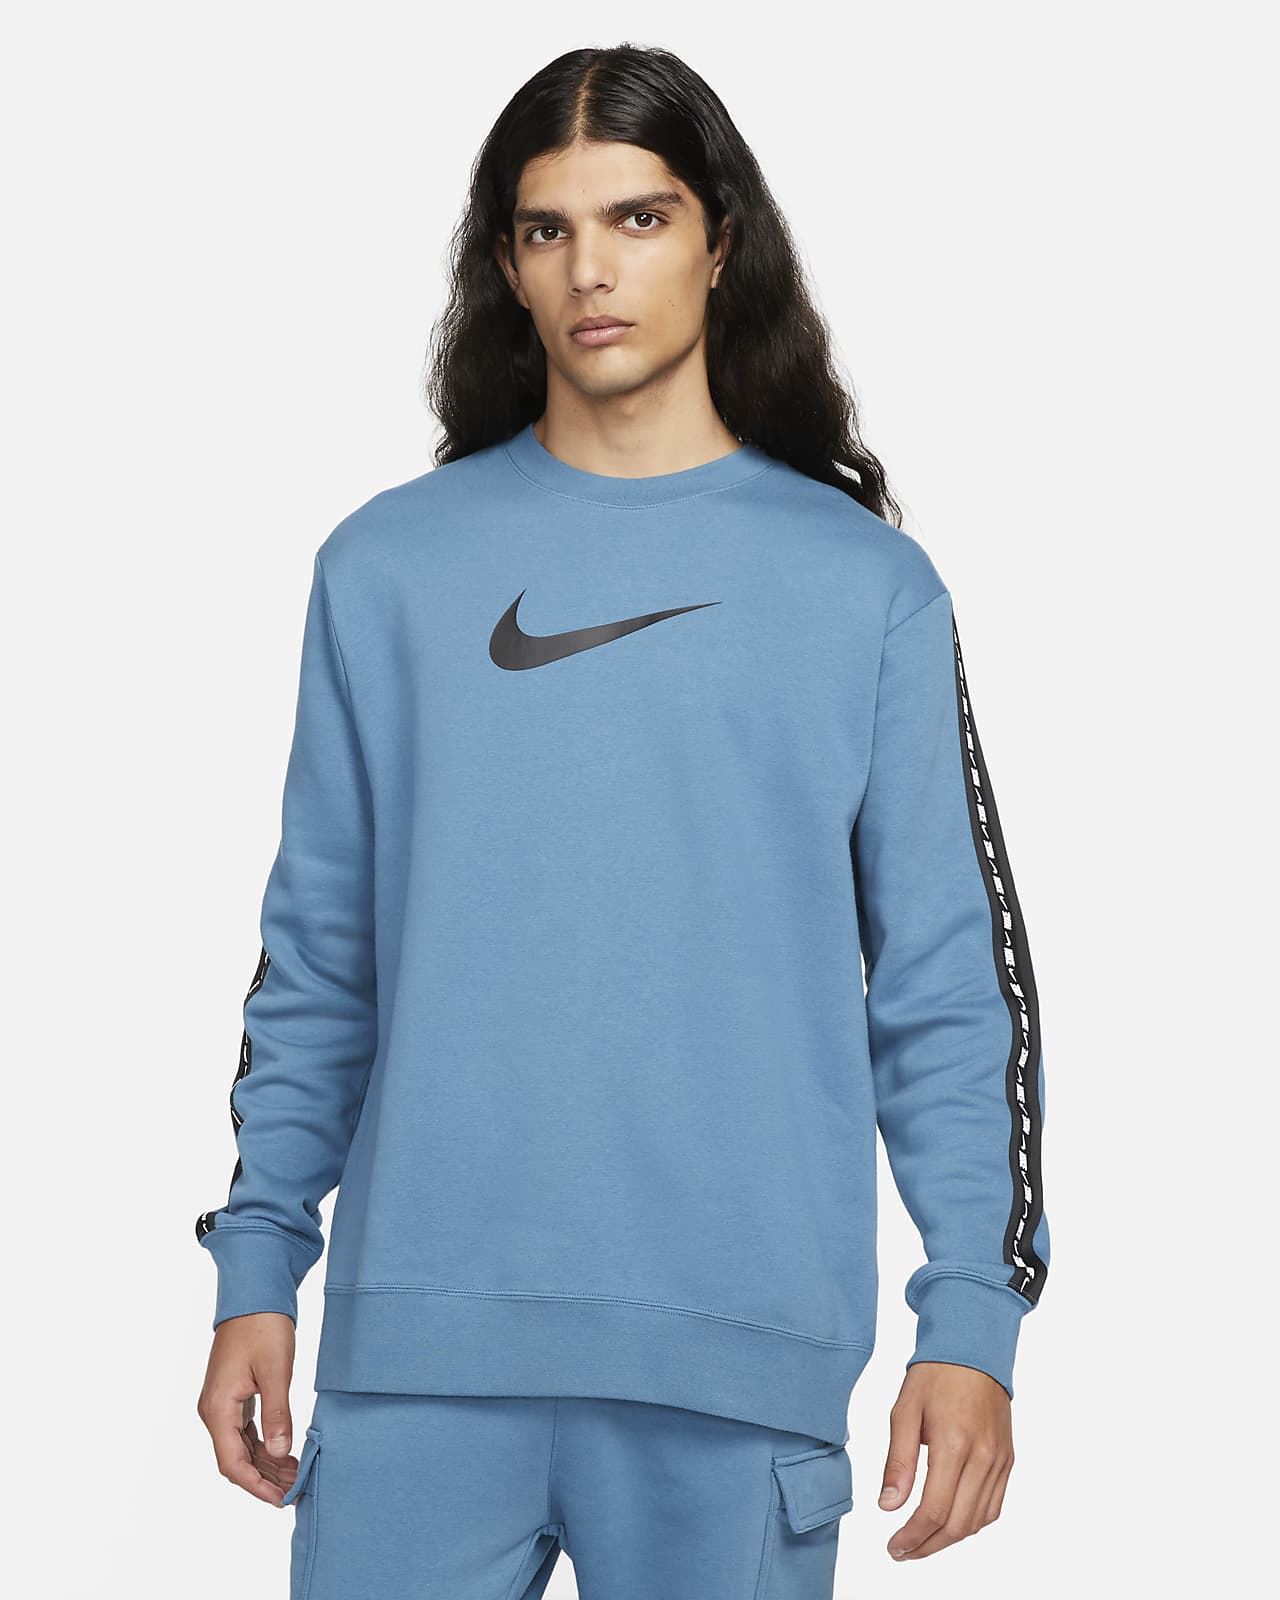 Nike Sportswear Men's Fleece Sweatshirt